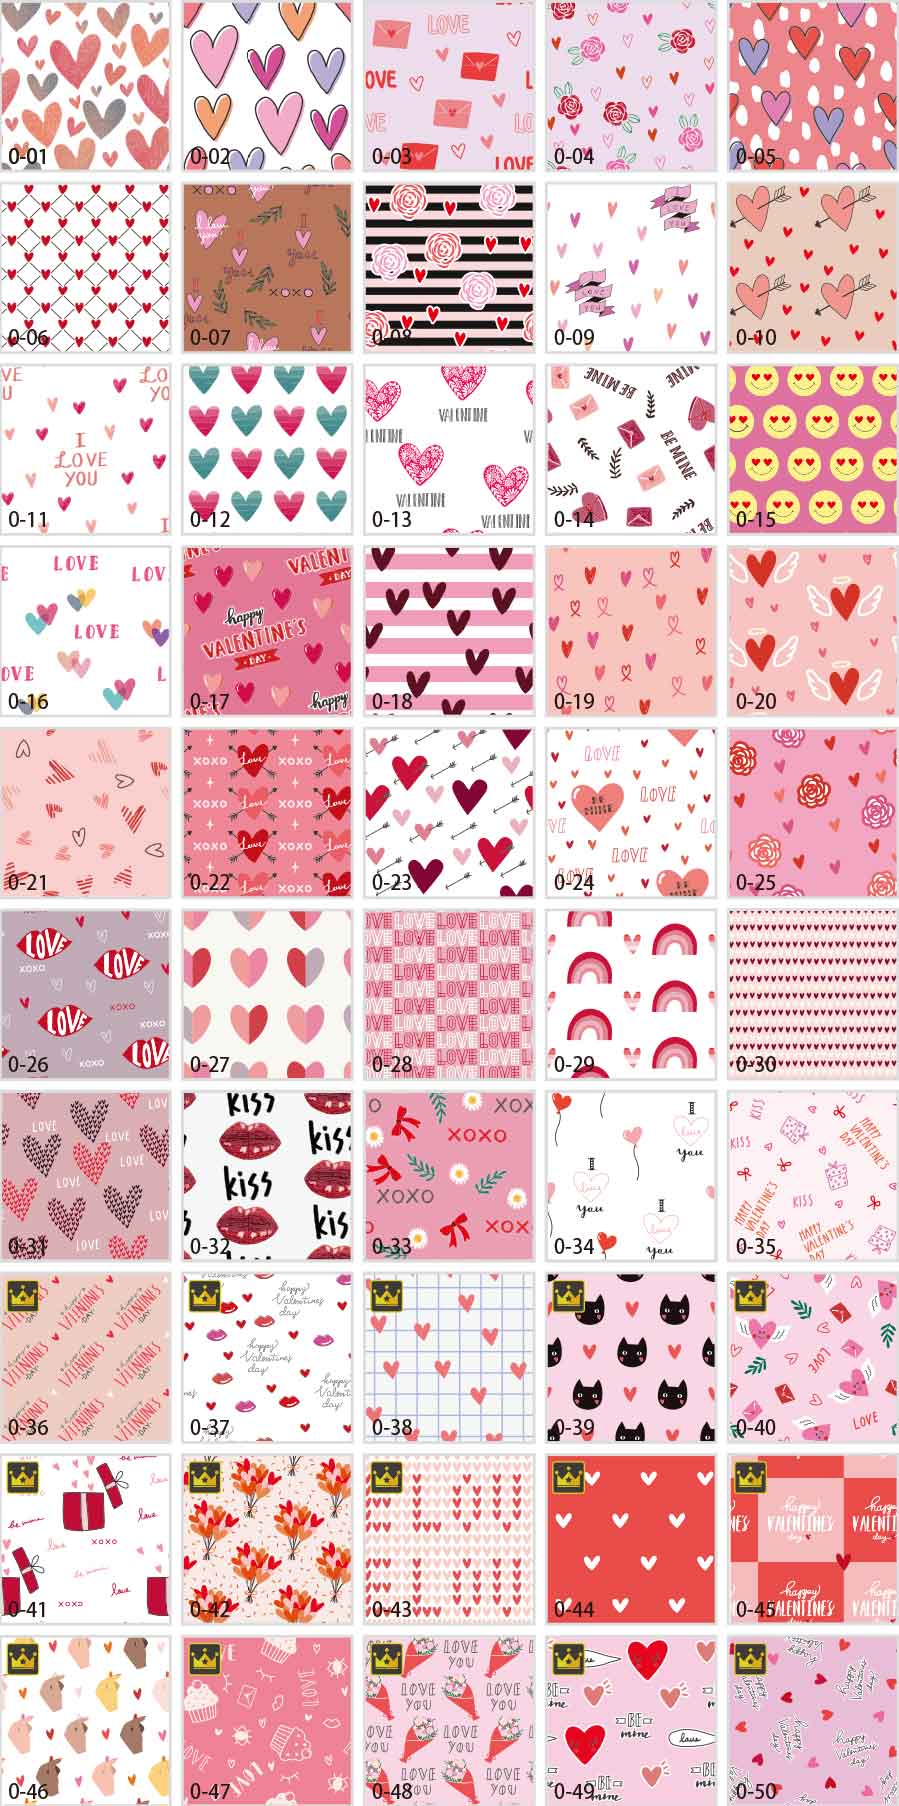 발렌타인 패턴